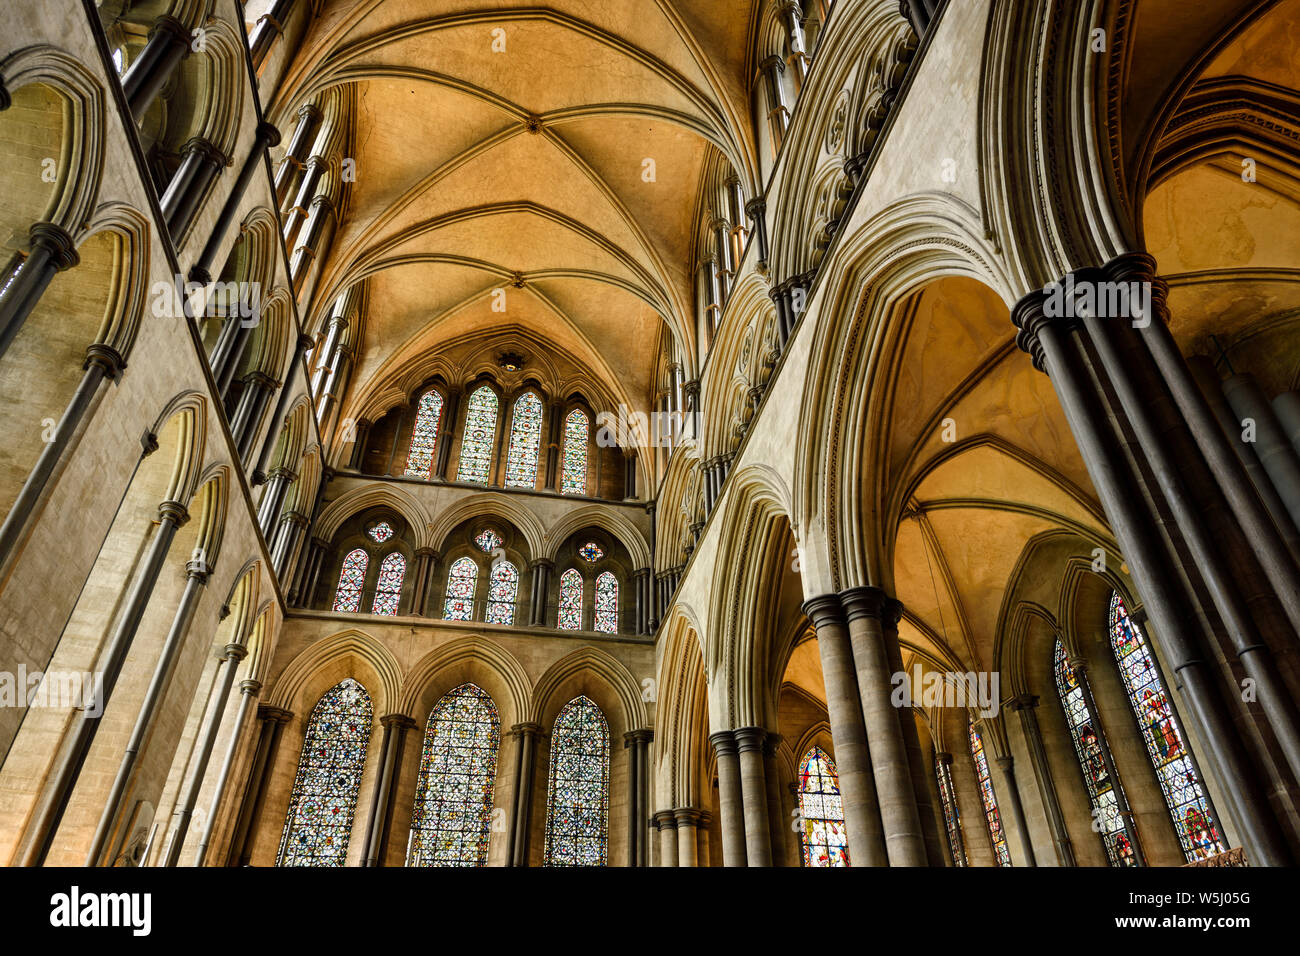 Transept nord plafond voûté avec des piliers et des arches et vitraux de la cathédrale de Salisbury Salisbury Angleterre médiévale Banque D'Images